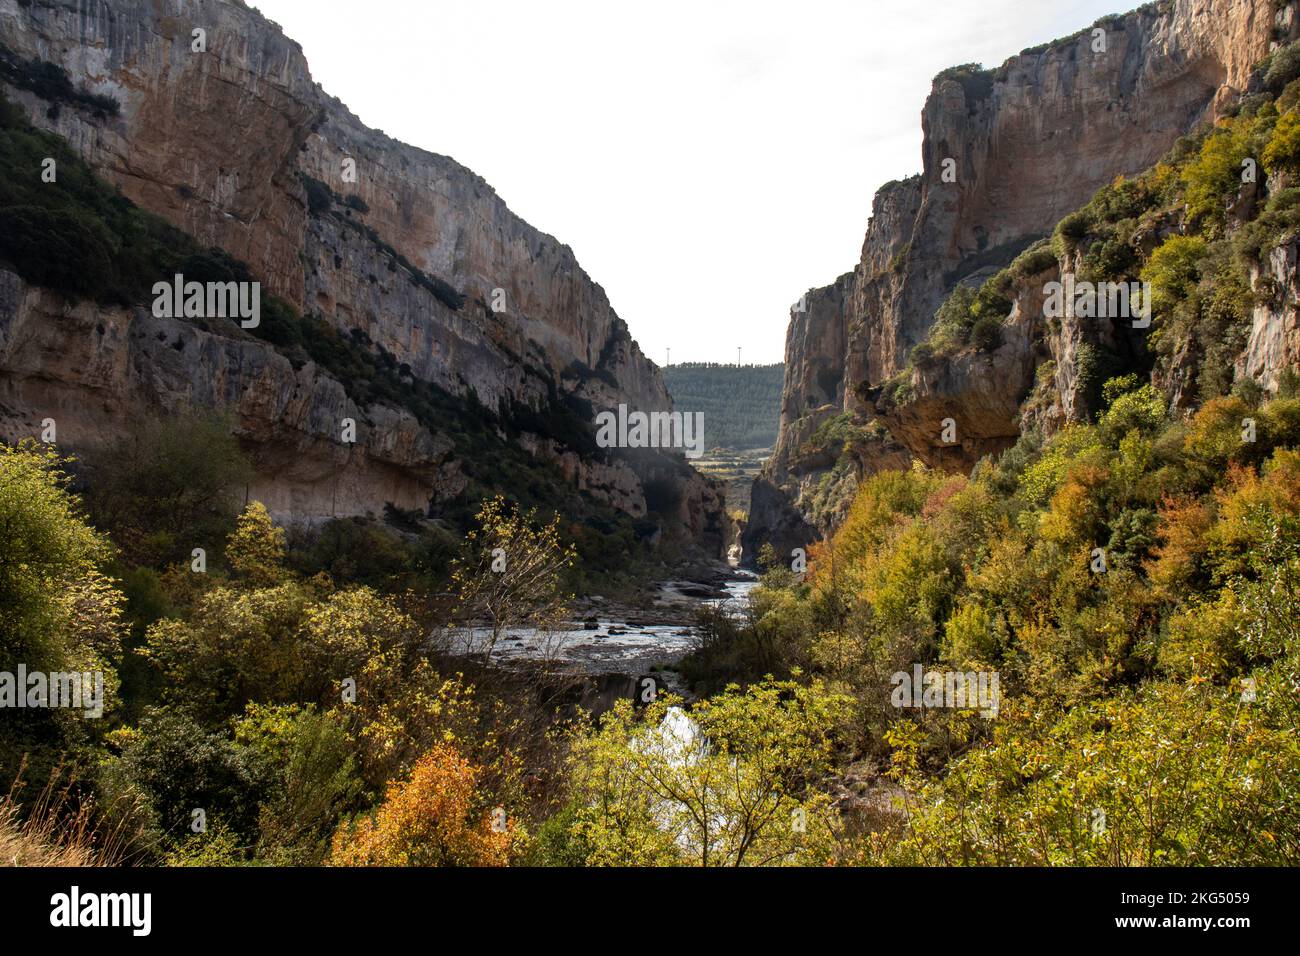 Foz o cañón de Lumbier en otoño, formado por el río Irati. Garganta de piedra caliza. Lugar mágico en Navarra, España Stock Photo